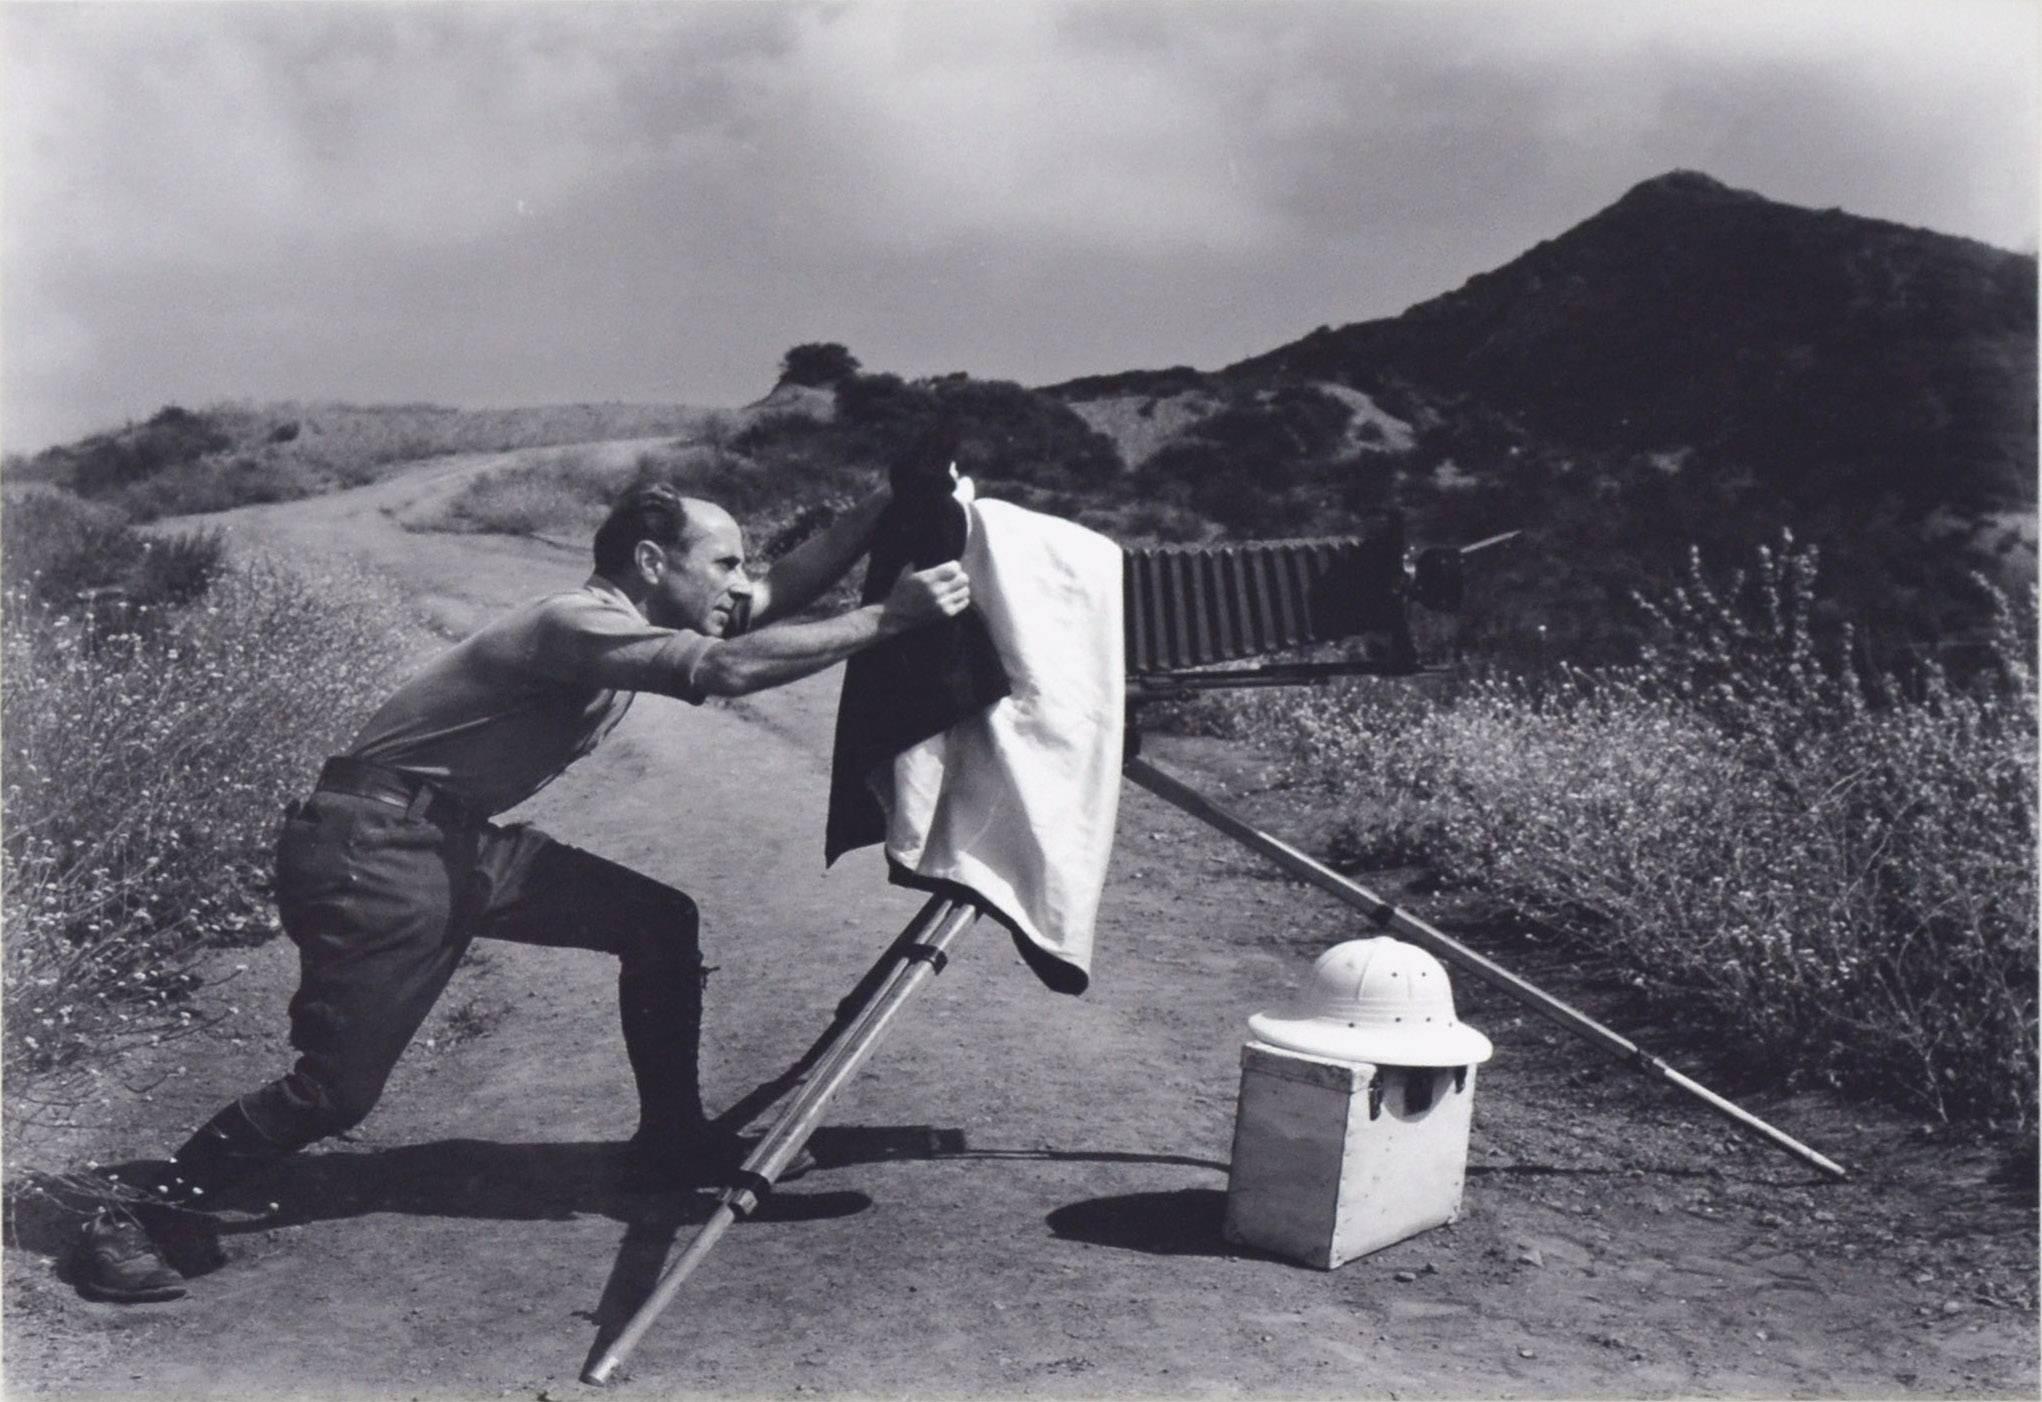 Zeitloses Bild von Edward Weston in Oceano Dunes:: Kalifornien 1947 (gedruckt 1967) von Chandler (Chan) Weston (amerikanisch:: 1910-1995). Ein unretuschierter 8x10-Kontaktdruck von Chandler Weston um 1967. Unten rechts mit Bleistift signiert „Chan